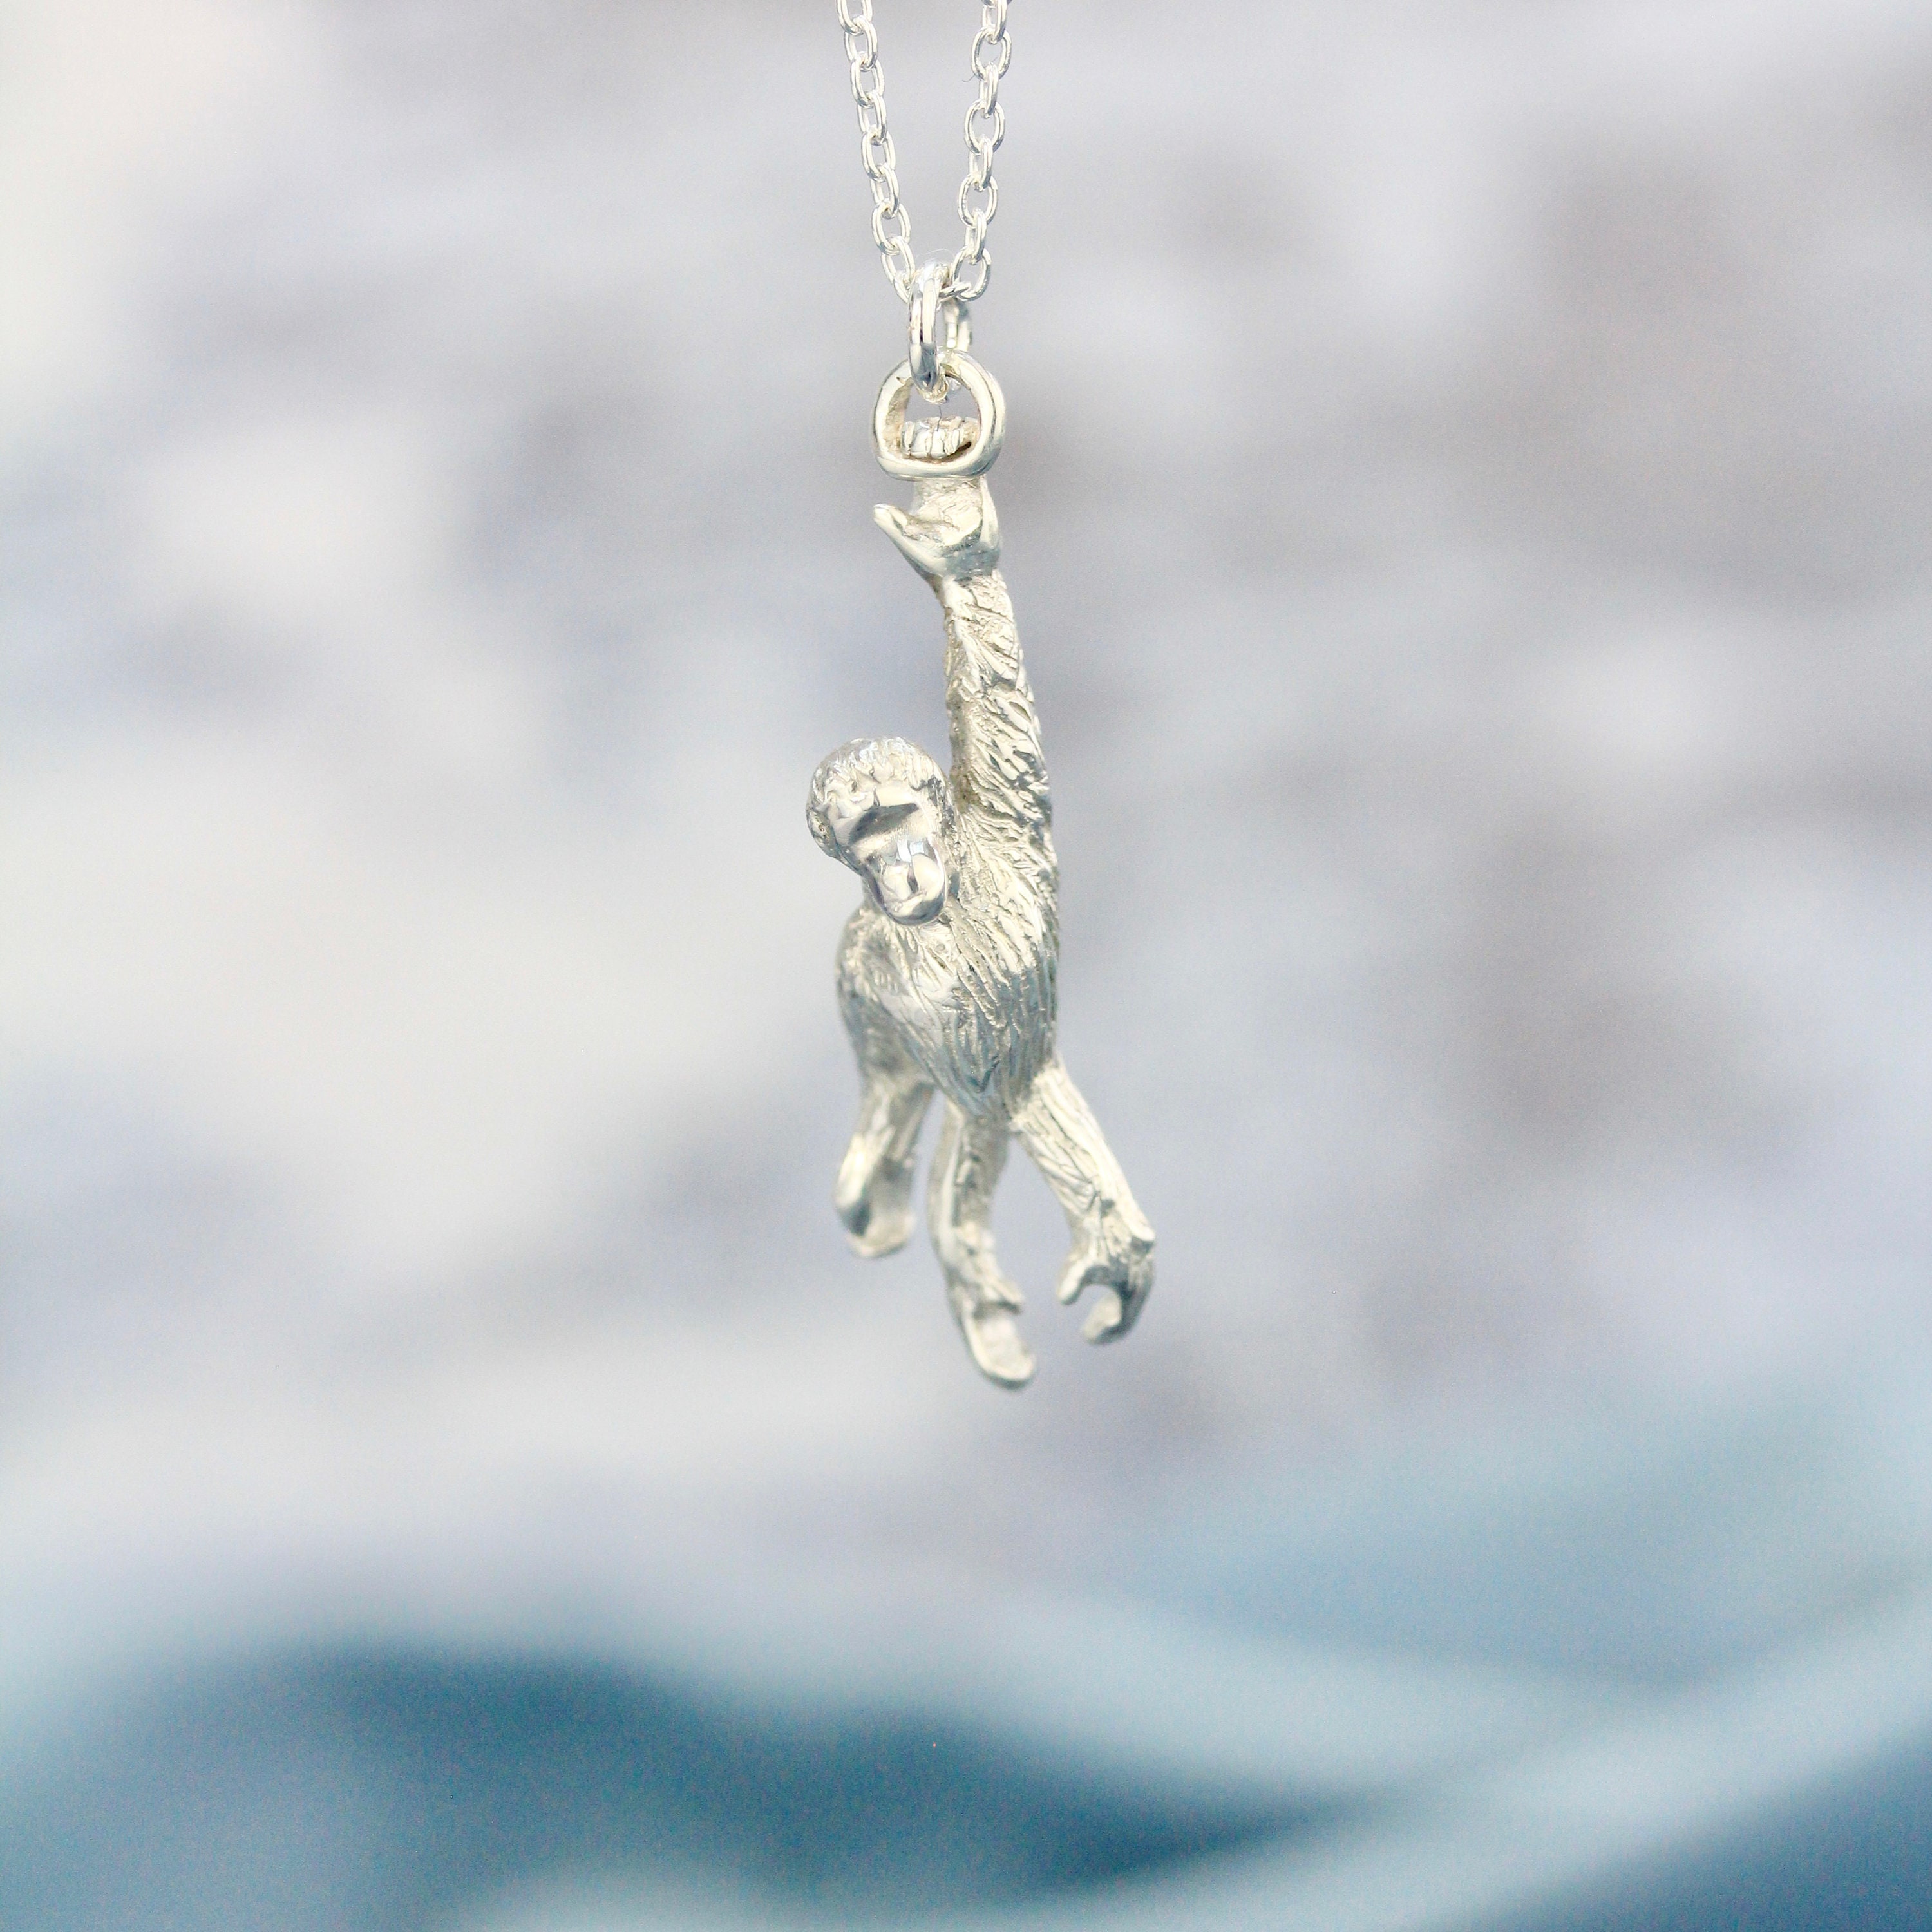 Orangutan Necklace | Sterling Silver Orang-Utan Pendant Personalised Animal Pendant By Rosalind Elunyd Jewellery